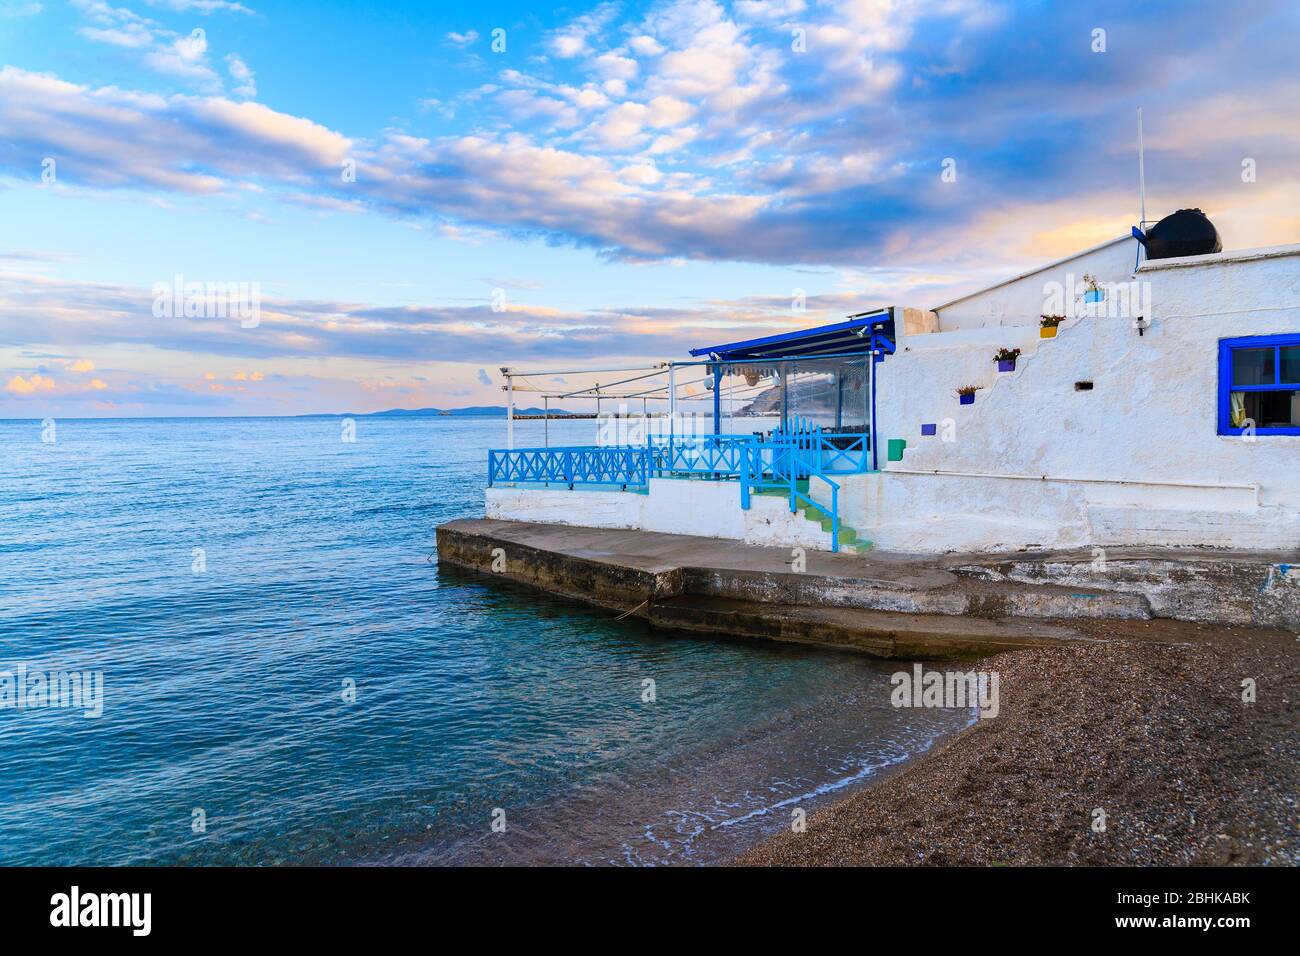 Greek taverna on beach at sunset time in Ireon village, Samos island, Aegean Sea, Greece Stock Photo